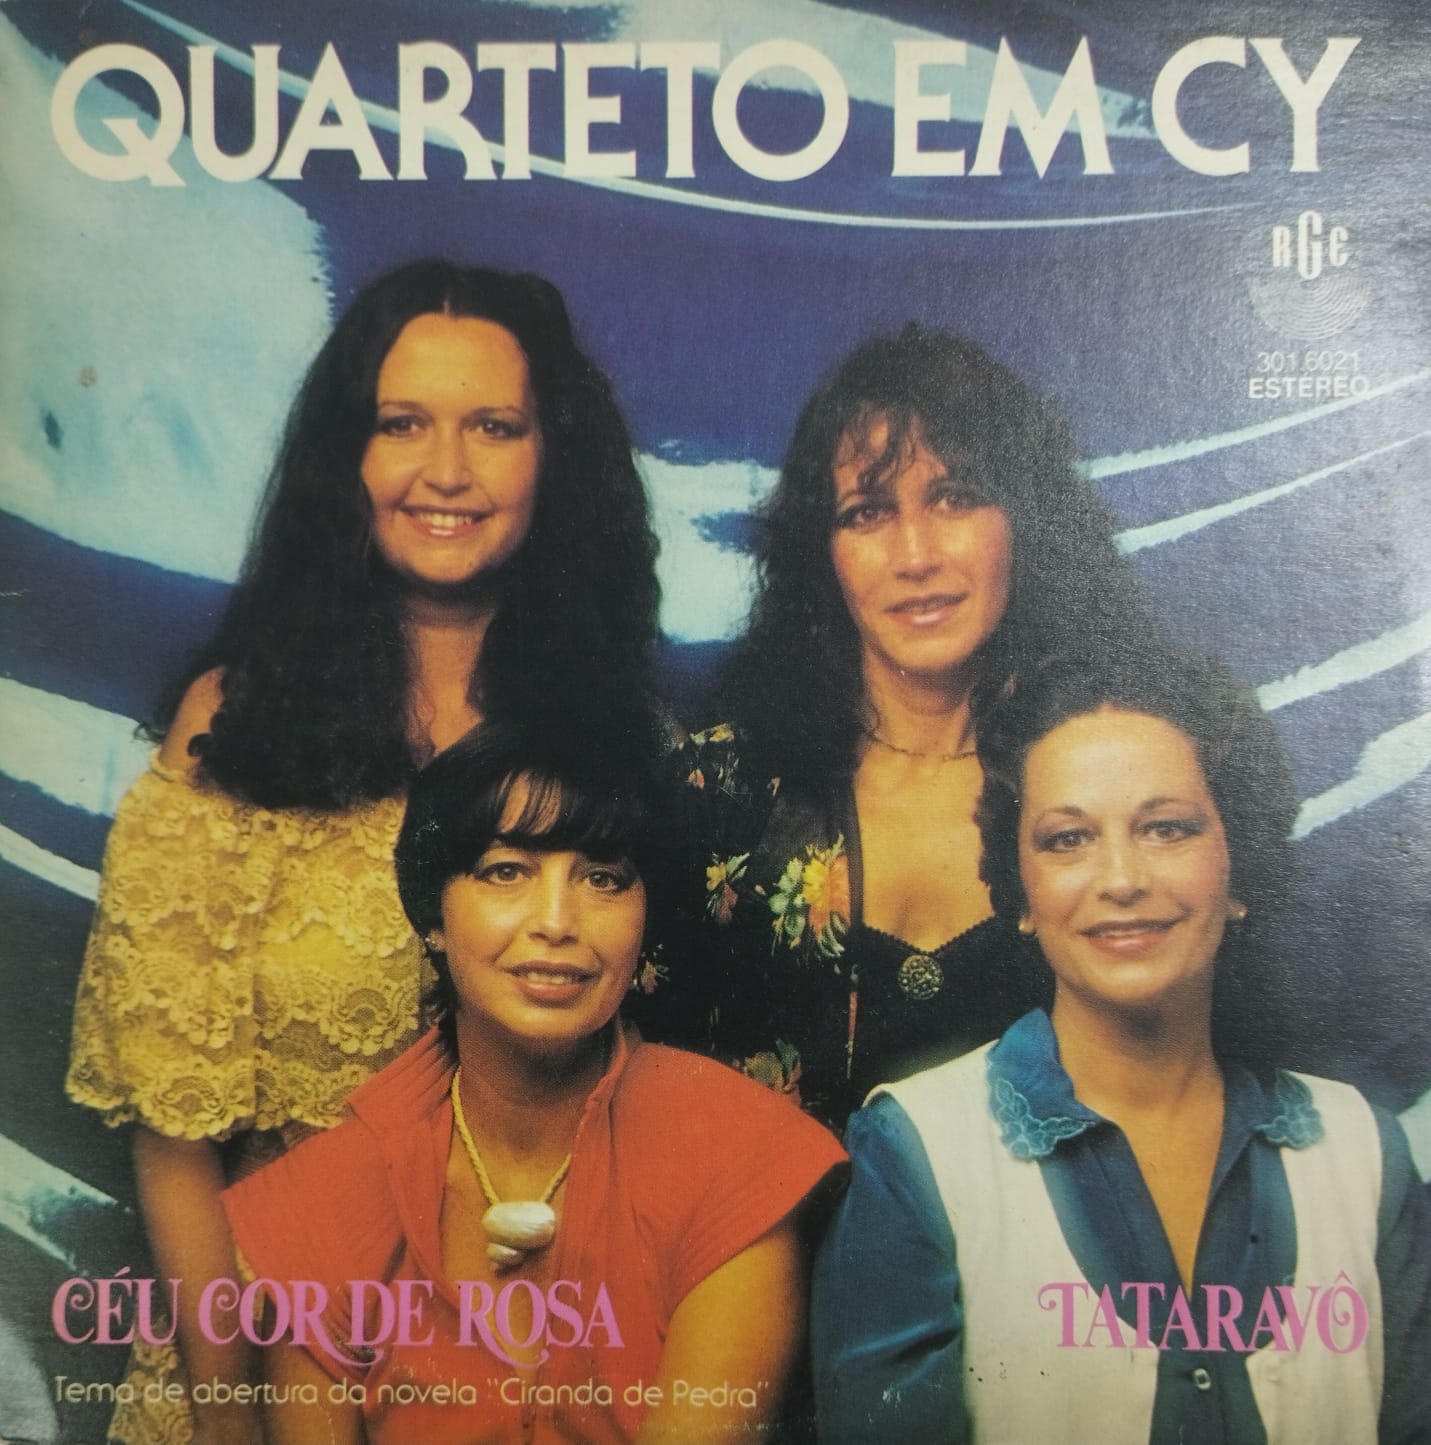 Quarteto em Cy - Céu Cor de Rosa / Tataravô (Compacto)